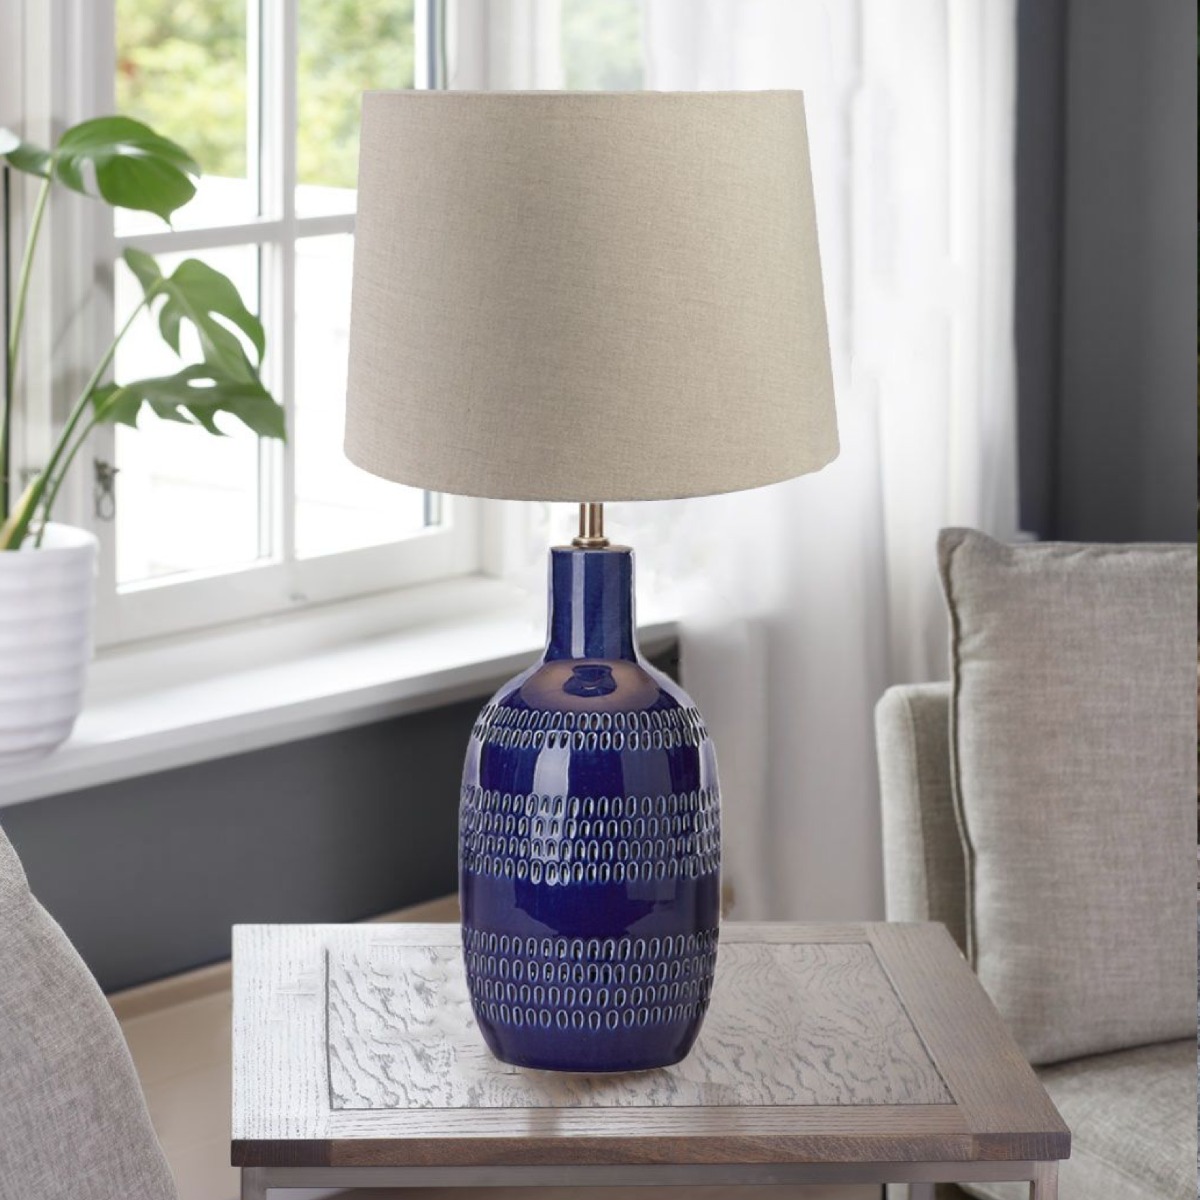 Zanta bordlampe i kobolt blå fra MS Belysning stående på et sidebord